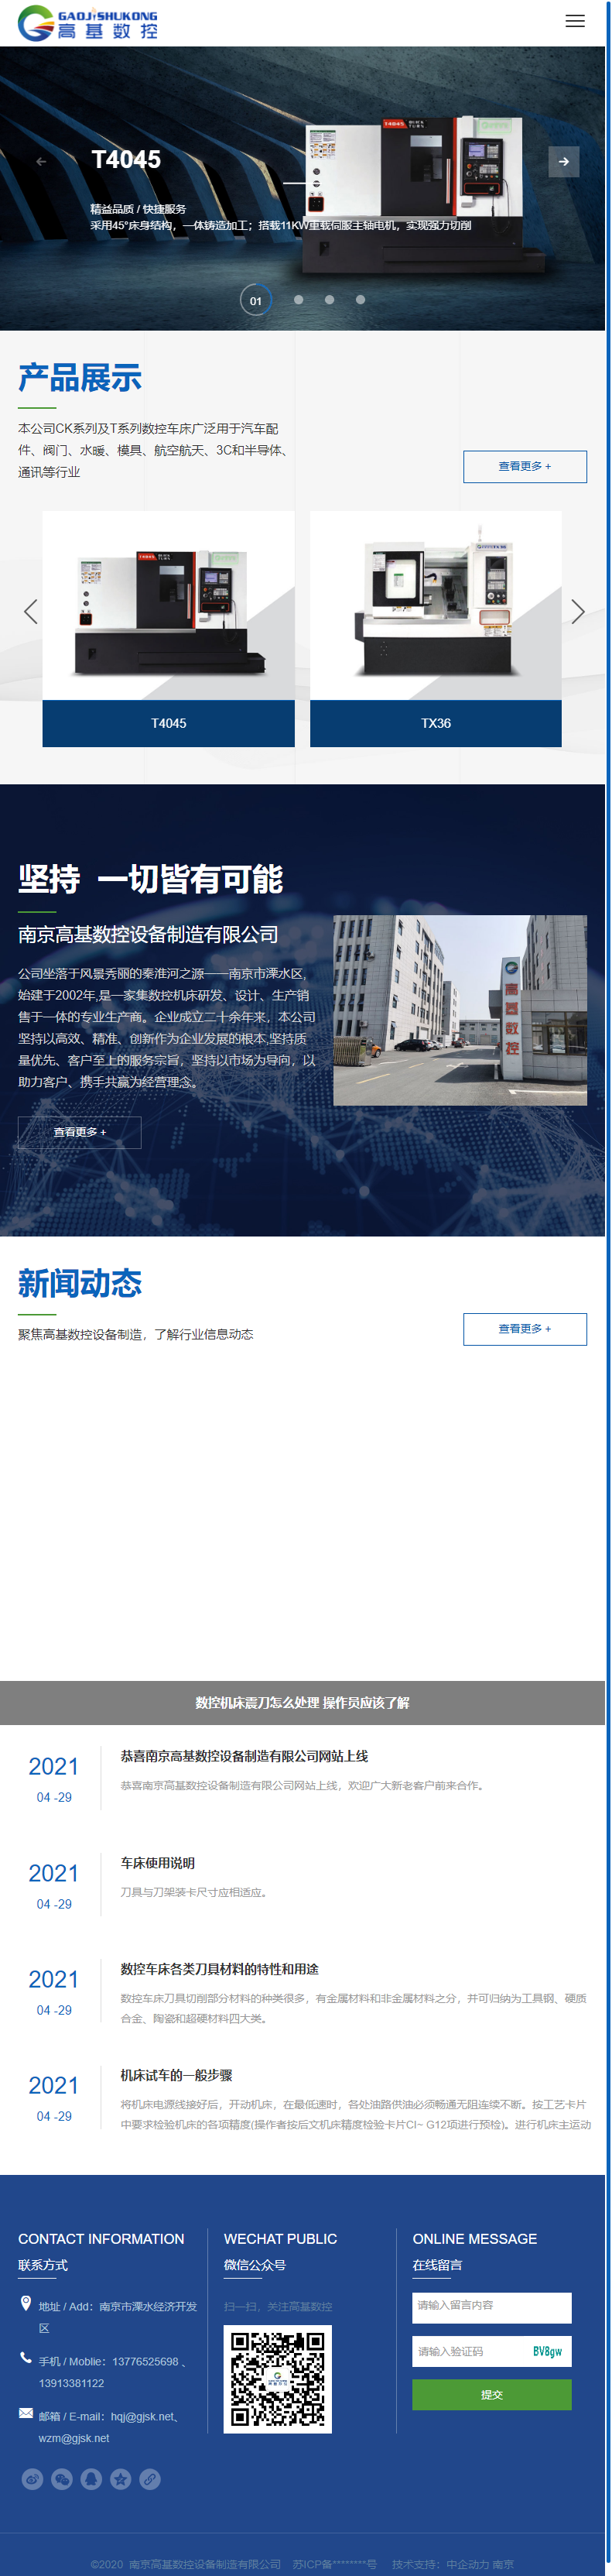 南京高基数控设备制造有限公司网站案例